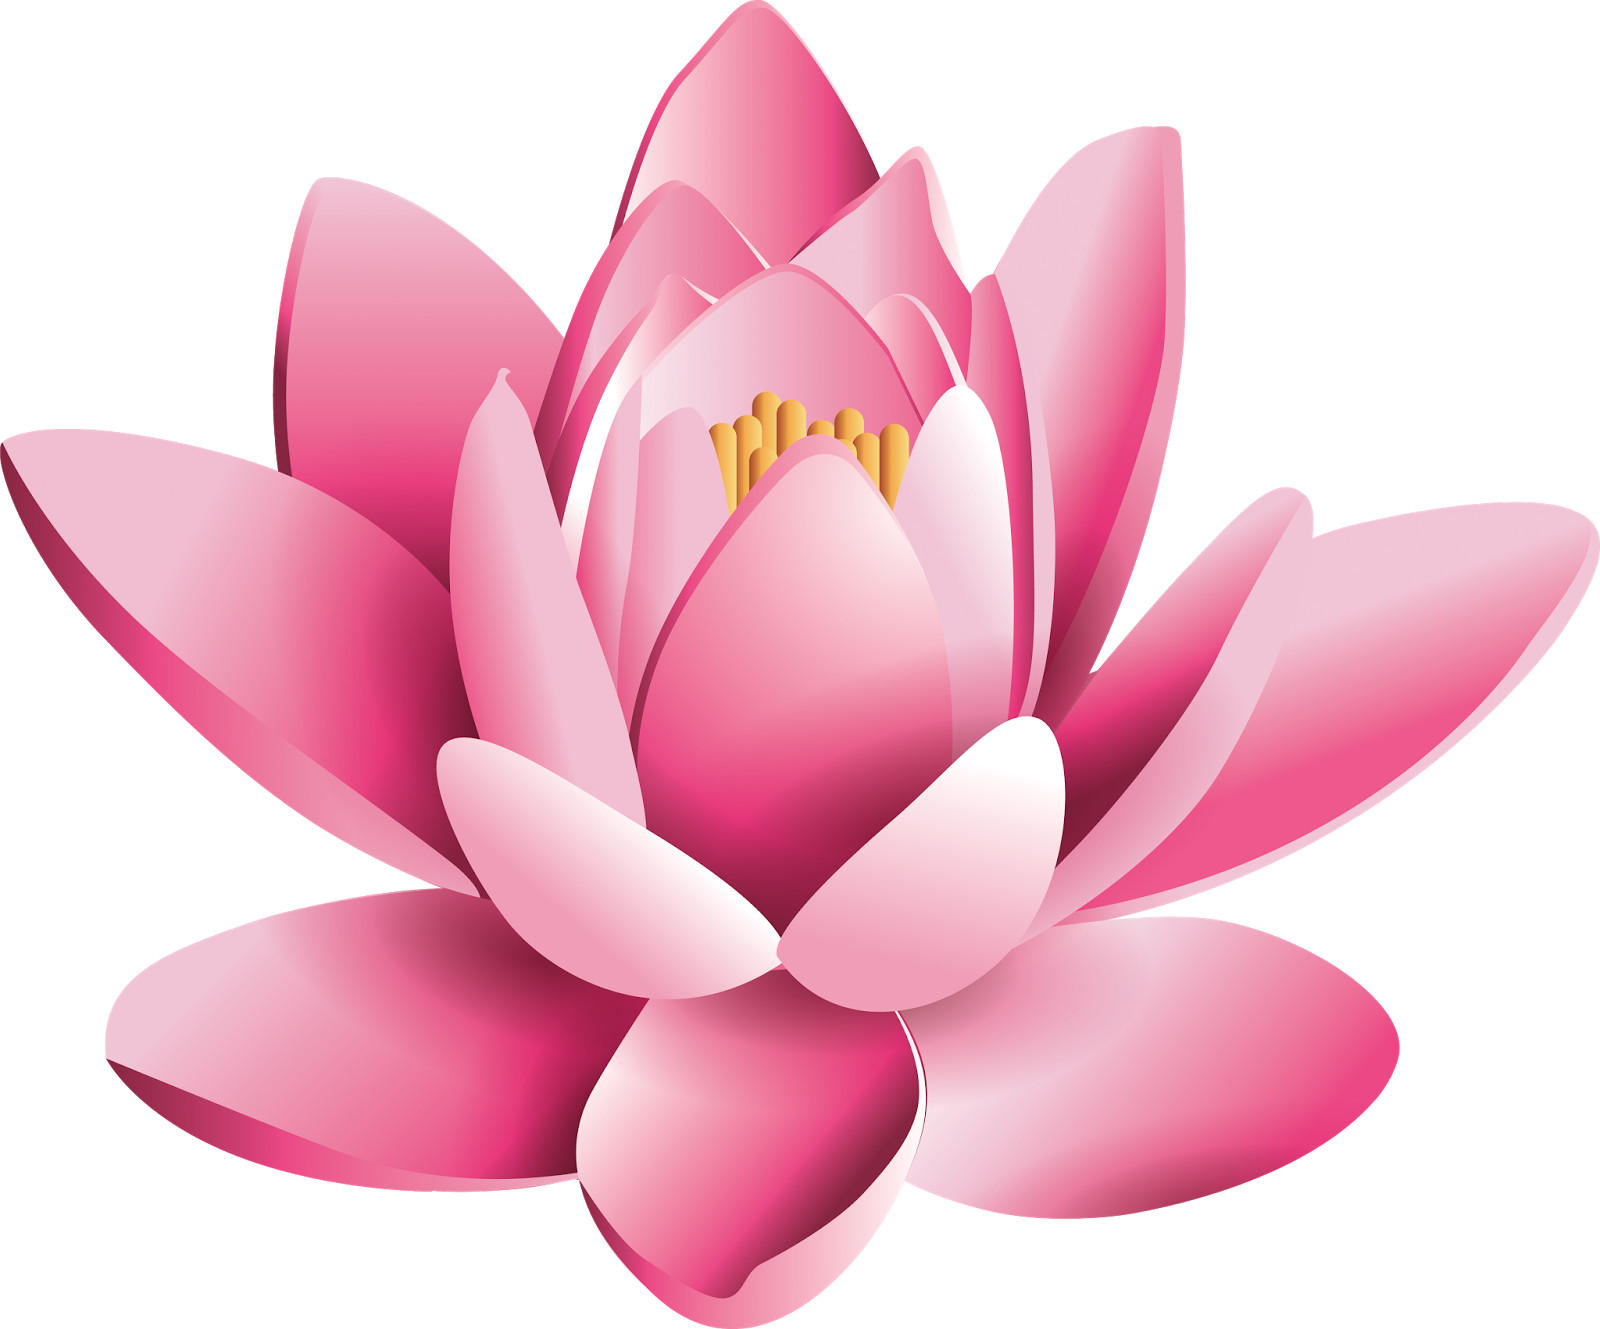 ดอกไม้ดอกบัวสีชมพู PNG Pic